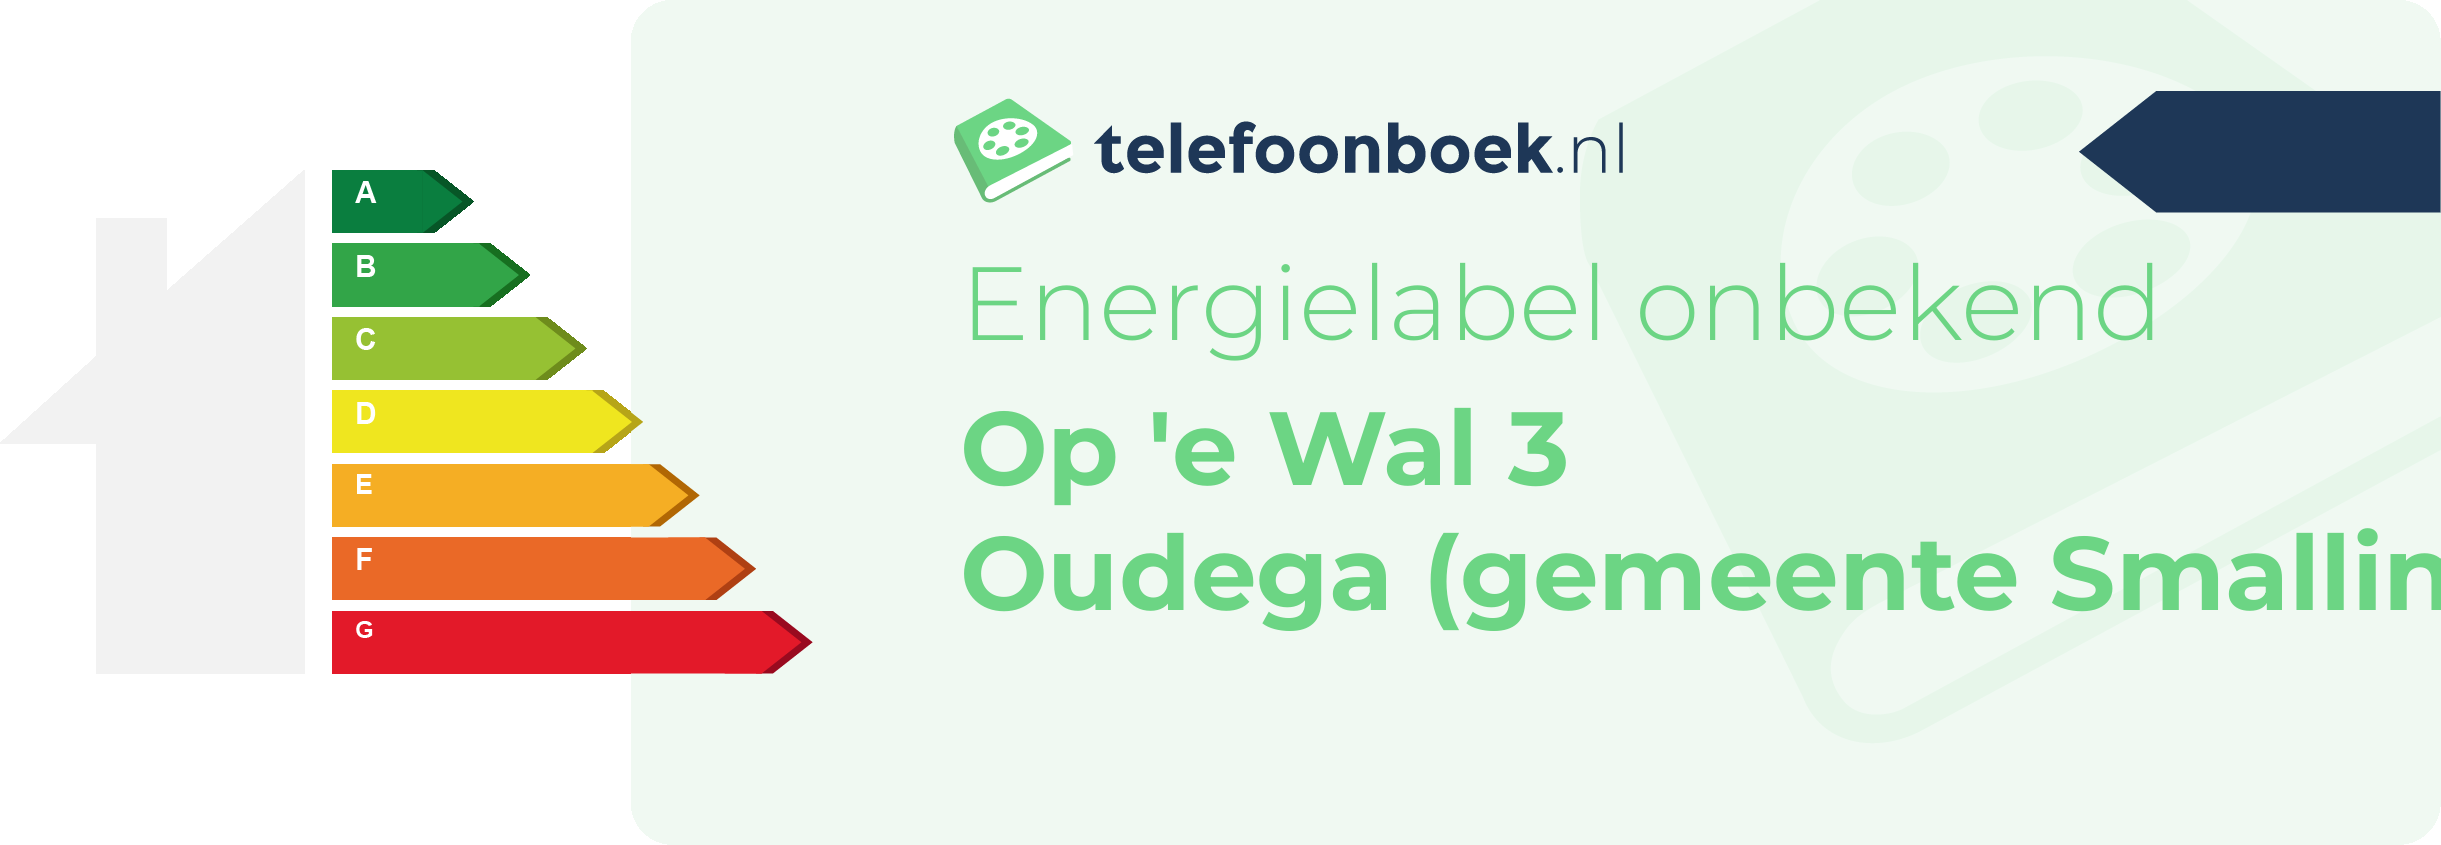 Energielabel Op 'e Wal 3 Oudega (gemeente Smallingerland Friesland)